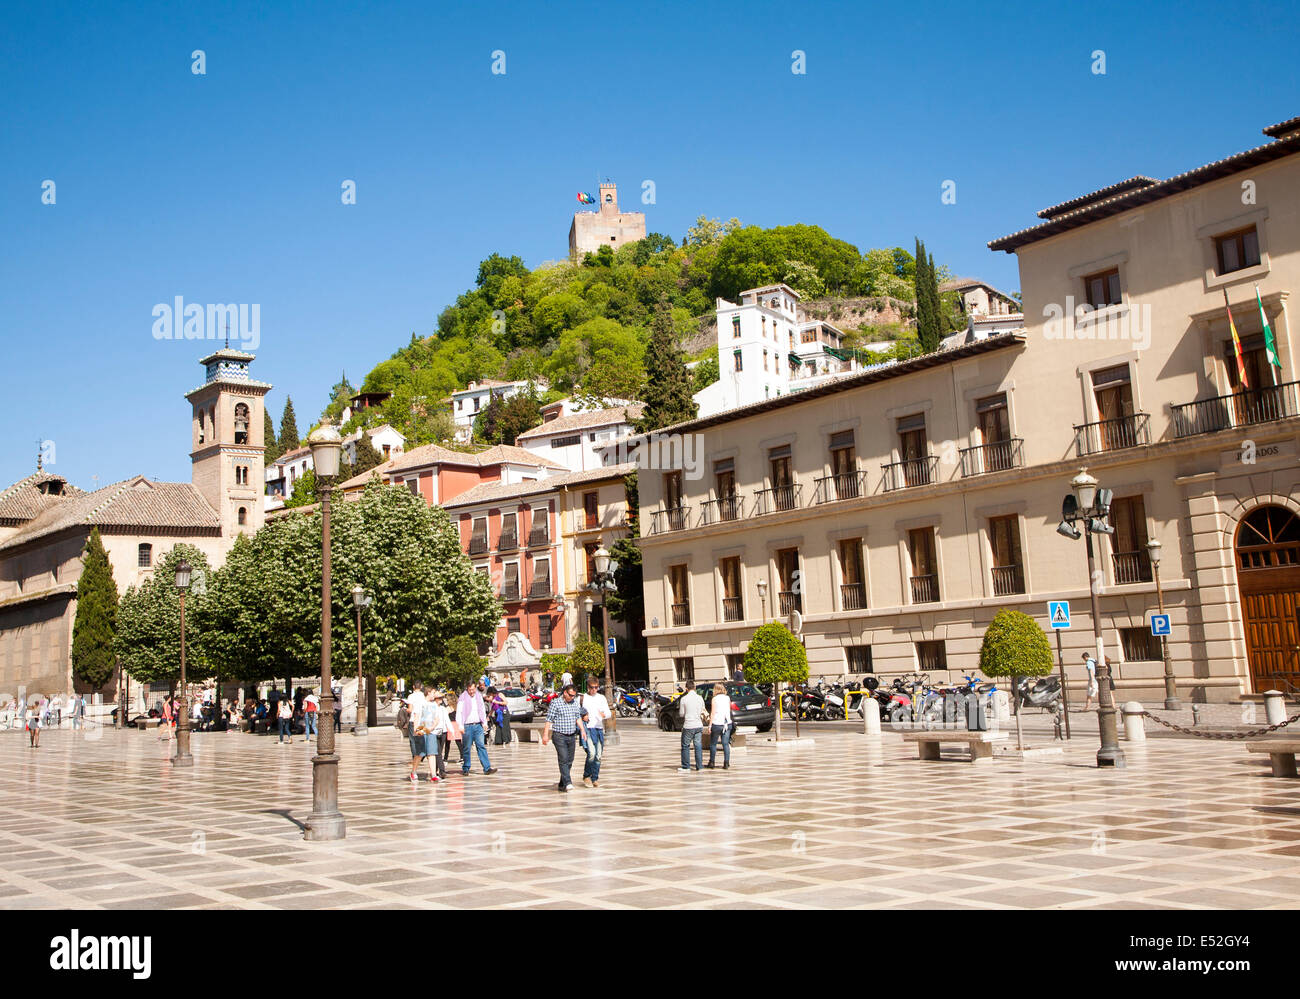 Bâtiments historiques sur la Plaza Nueva, Granada, Espagne Recherche jusqu'à la partie de l'Alhambra sur une colline. Banque D'Images